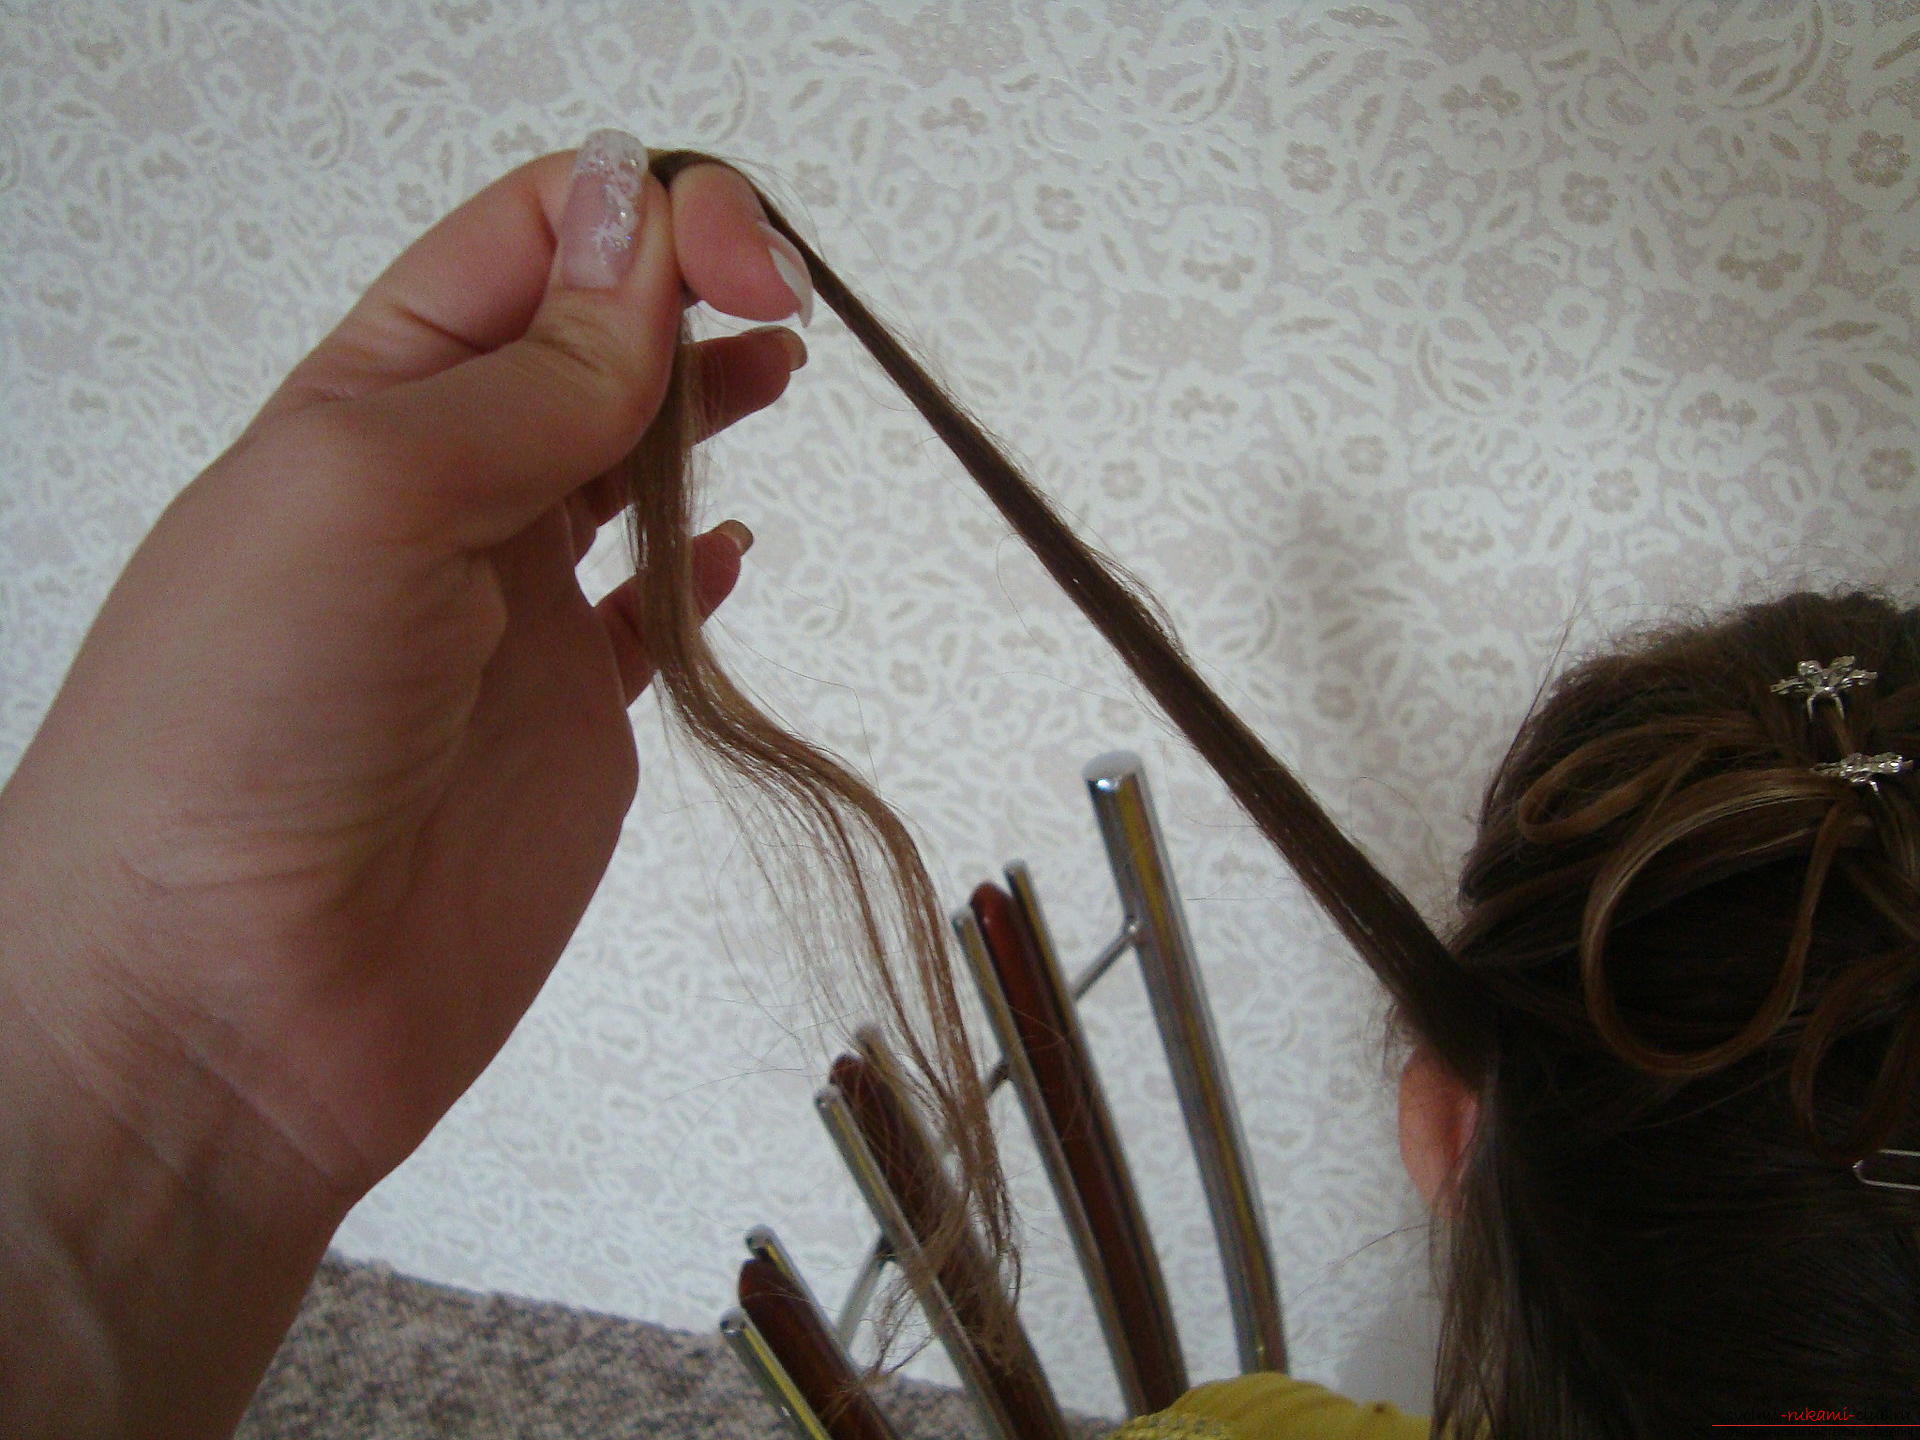 Belle acconciature sui capelli lunghi sono facilmente create dalle proprie mani. Master class con acconciature fotografiche graduali ti insegnerà a modellare magnificamente i tuoi capelli .. Immagine №3